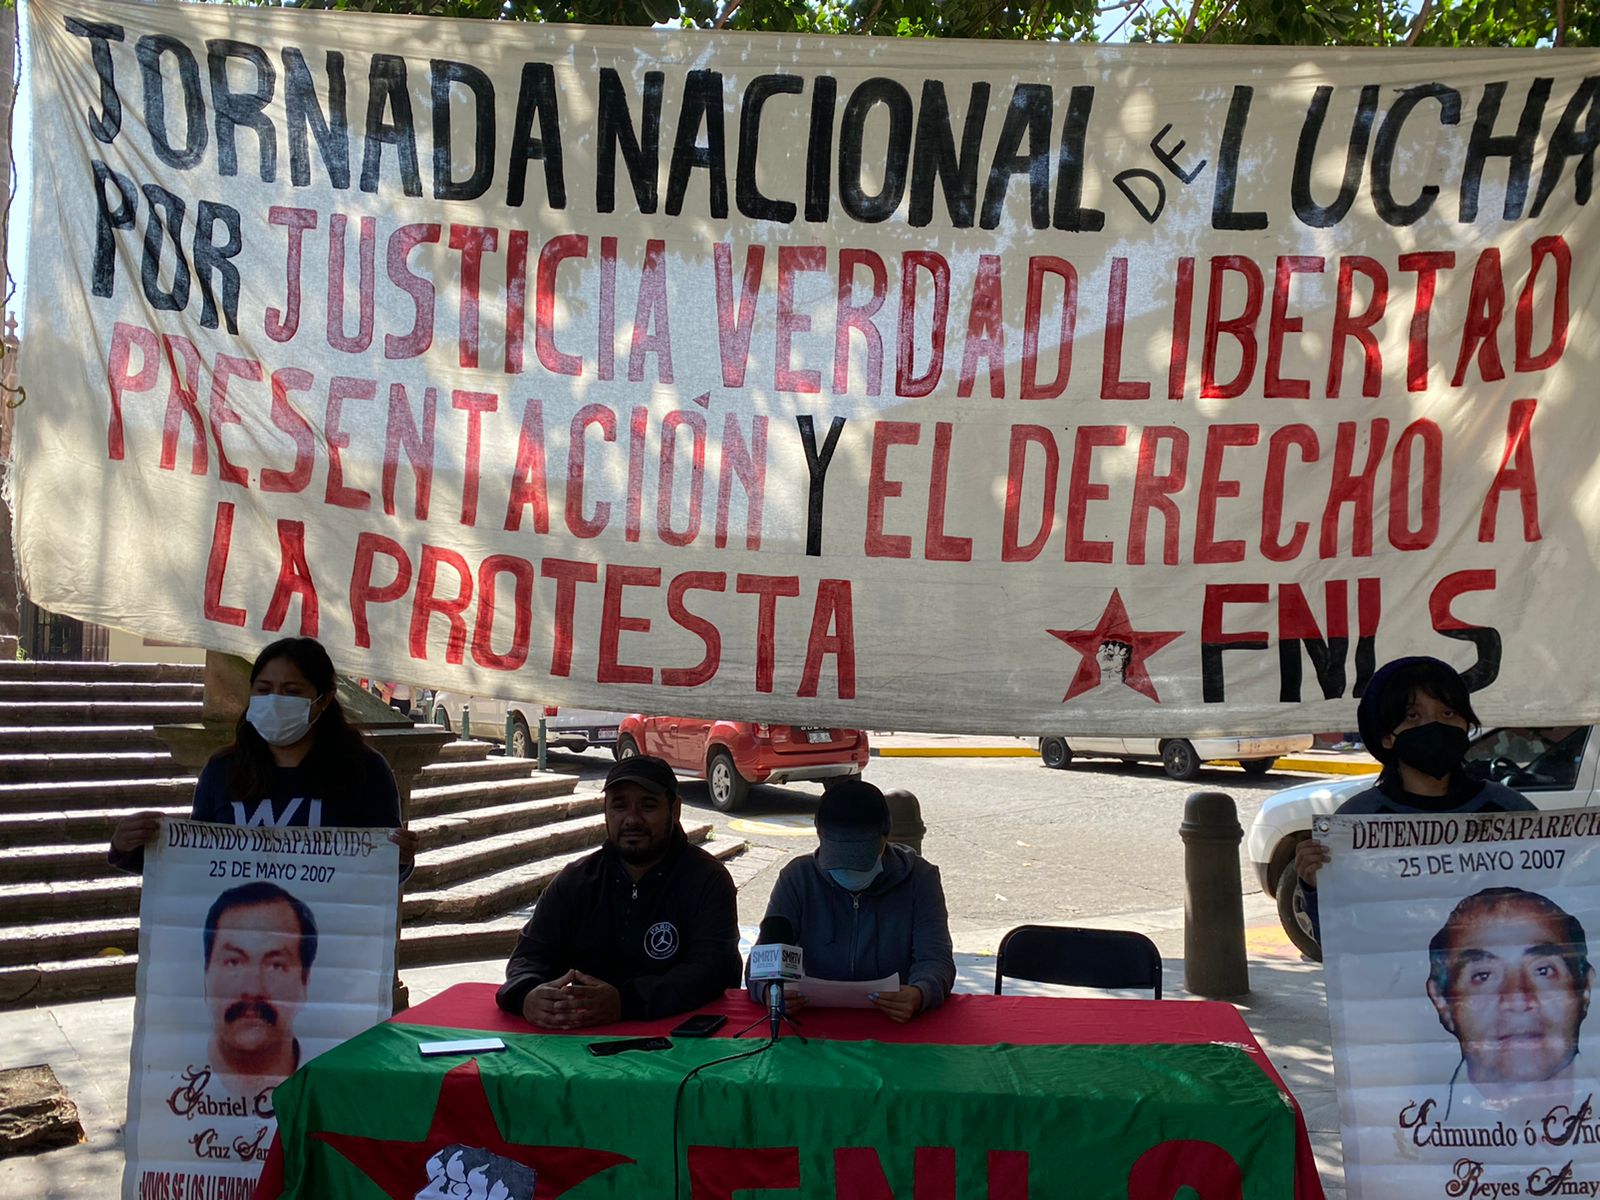 FNLS exigirá se abran los cuarteles para búsqueda de desaparecidos